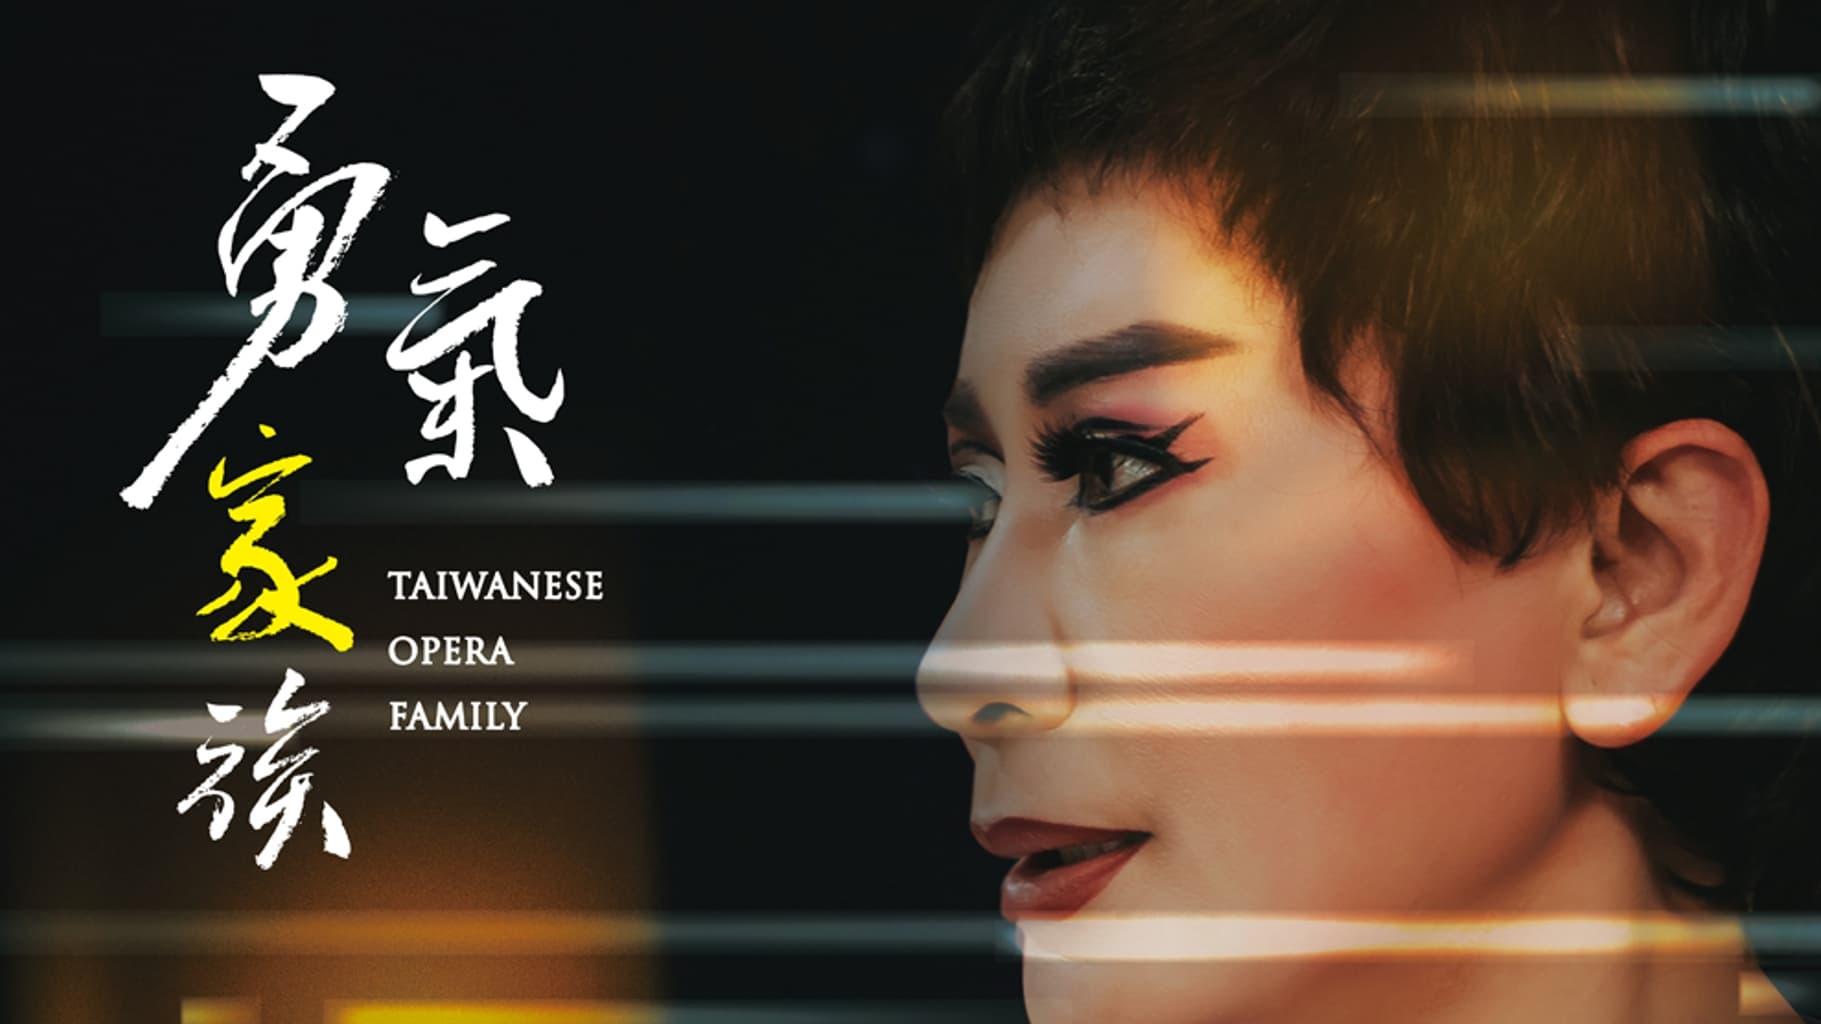 Taiwanese Opera Family backdrop